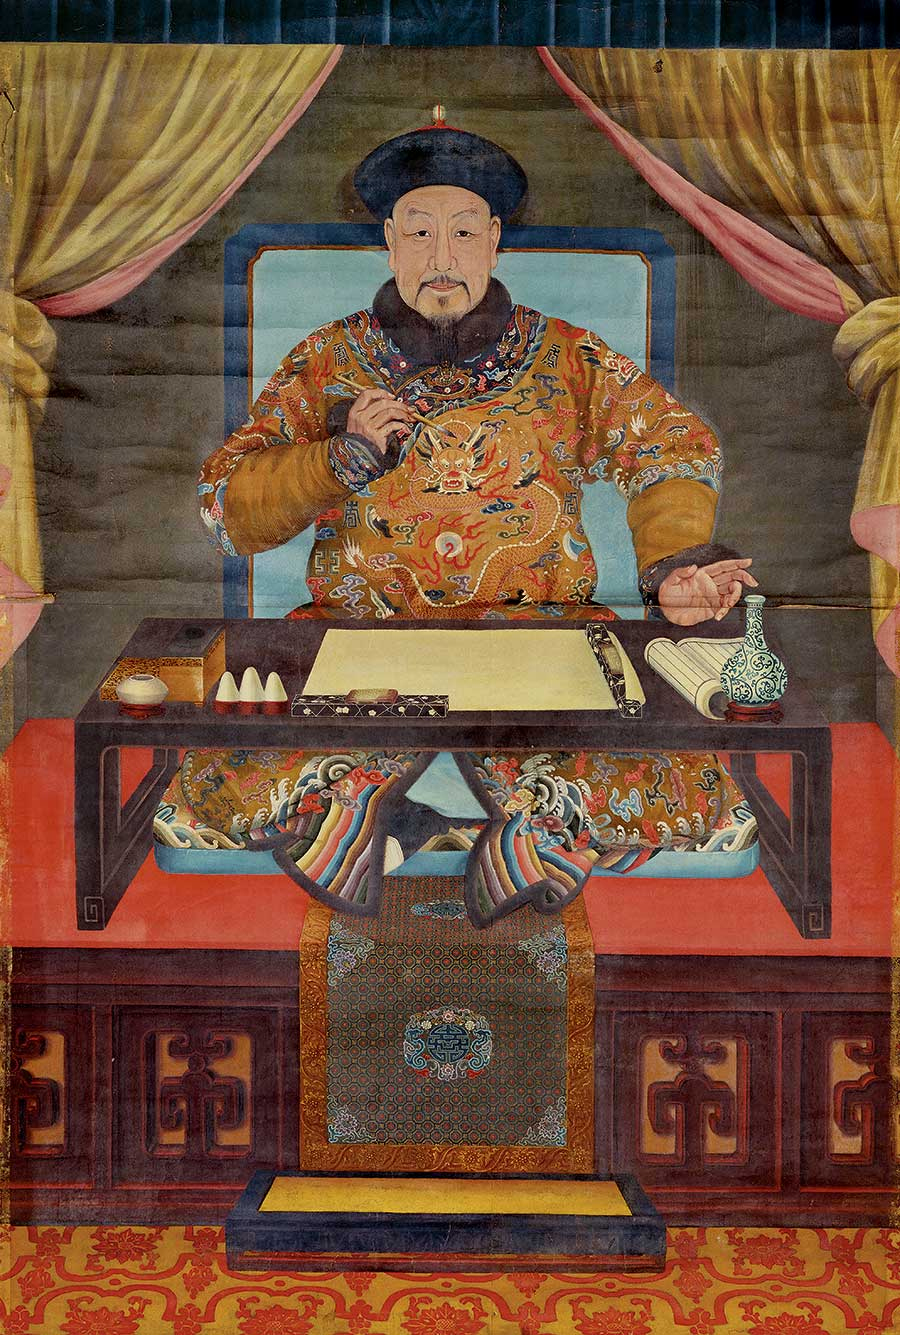 Vua Khang Hy va Càn Long nổi tiêng sống thọ nhất trong các đời vua nhà Thanh: Bí quyết hóa ra đơn giản đến vậy!- Ảnh 1.